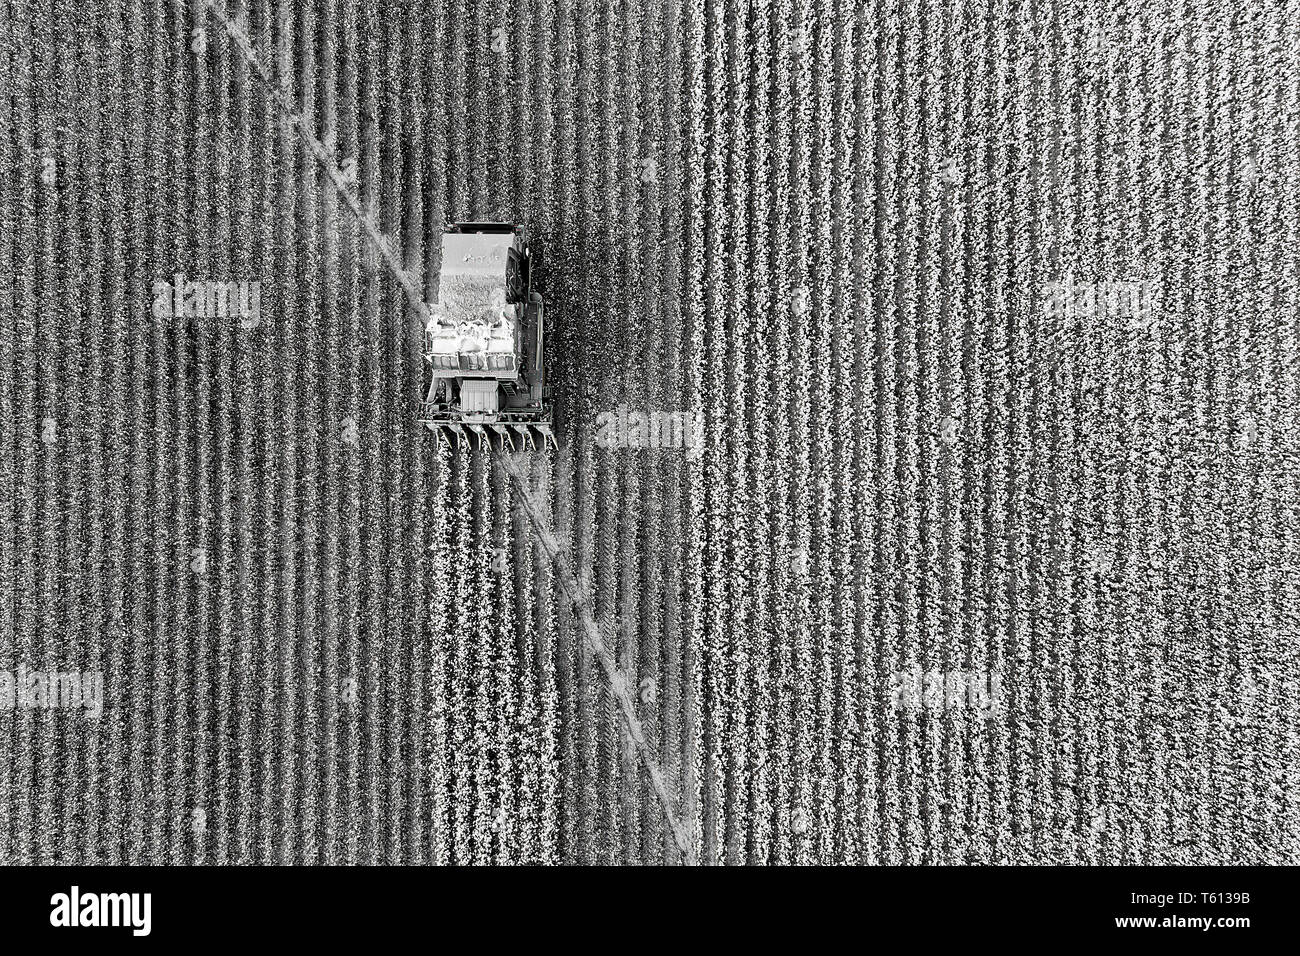 Baumwollernte Mähdrescher Traktor fahren auf Baumwolle Feld Rip angebauten Baumwolle Rohstoff in Antenne Overhead - Schwarz Weiß Weiß Baumwolle zu Kontrast Stockfoto